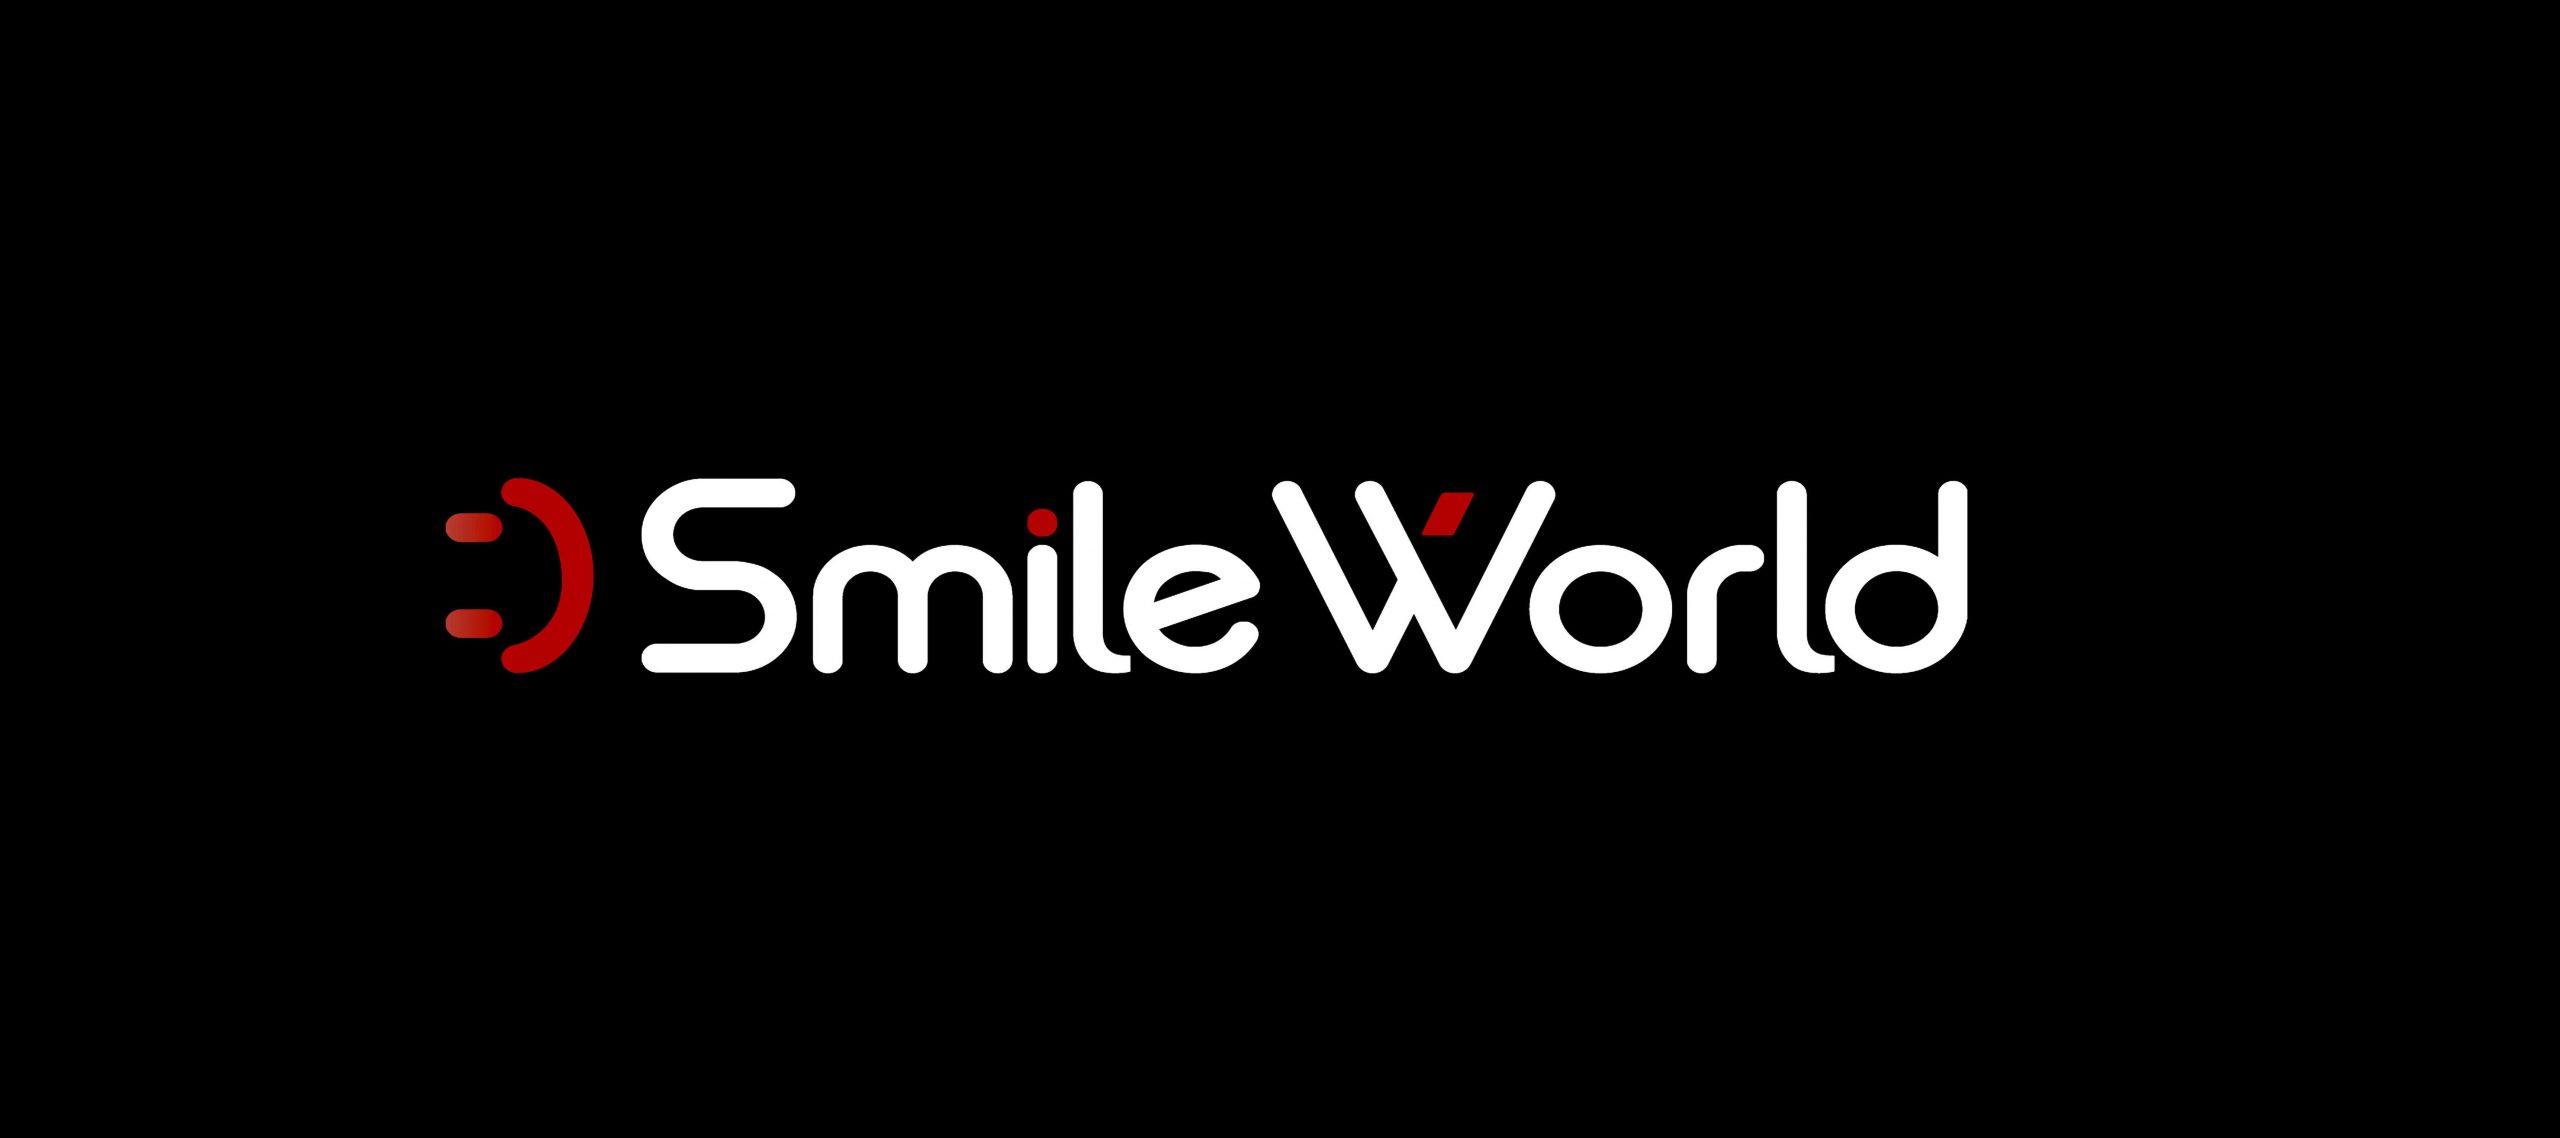 The 2022 “Smile World” International Photography Award - logo